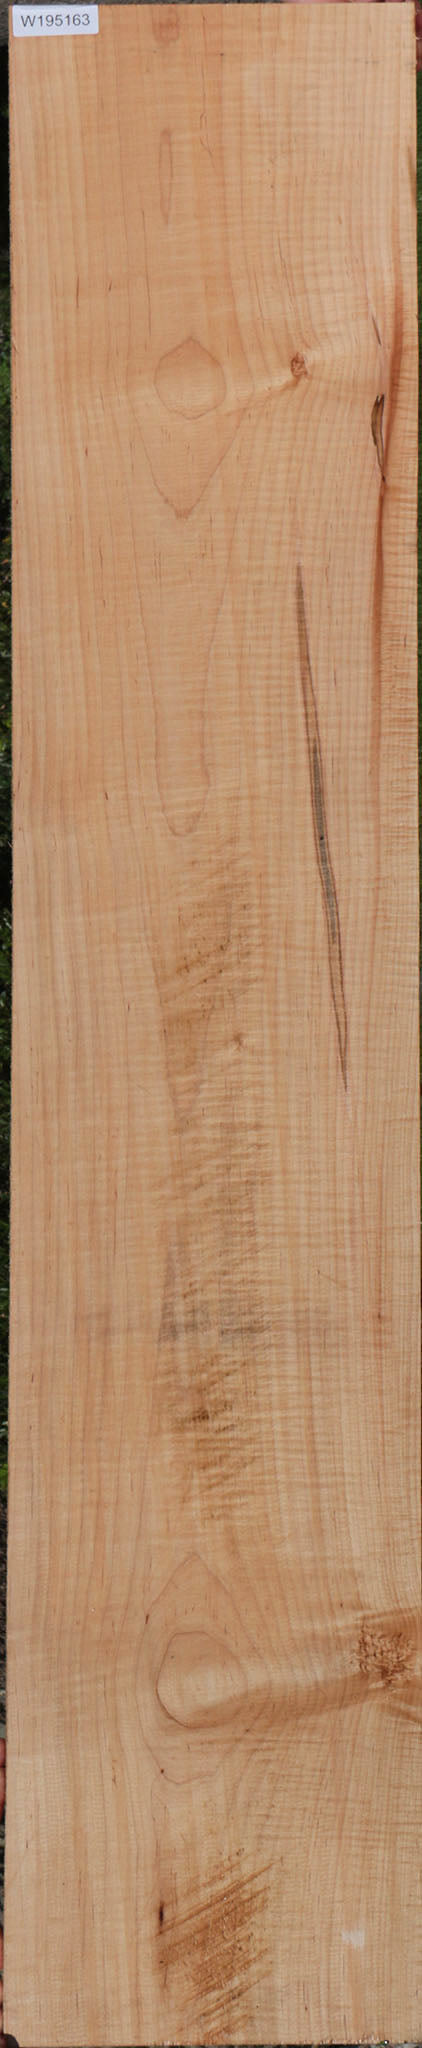 Hardwood Lumber Prices  Curly Maple Lumber, Exotic Lumber